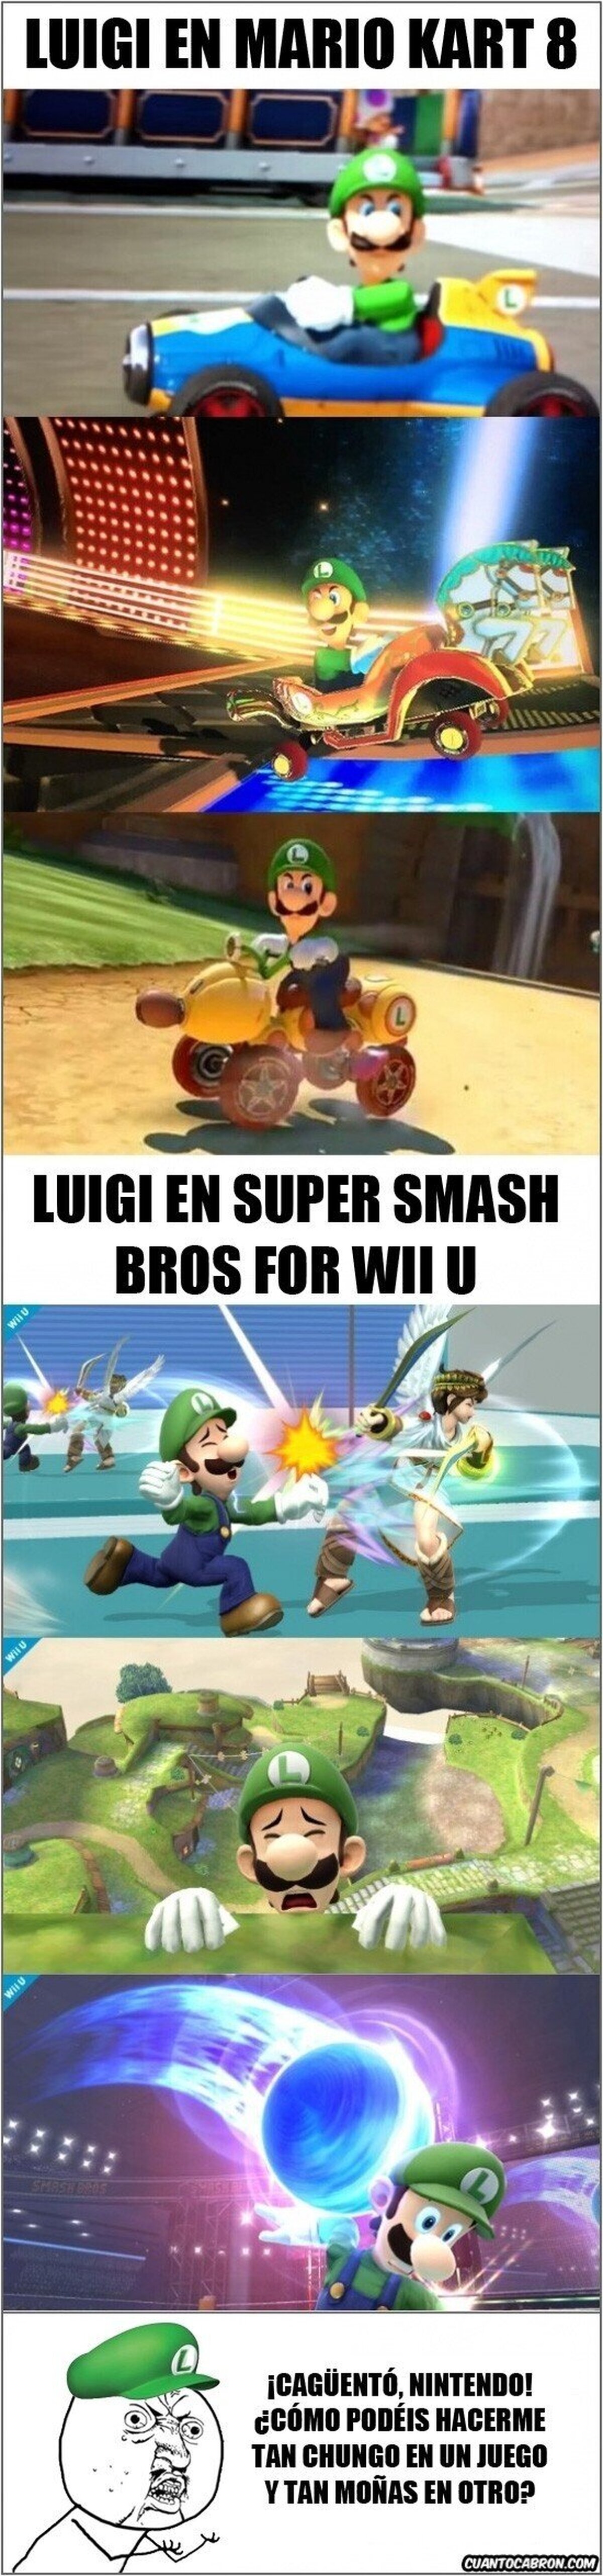 Luigi y su personalidad cambiante según el juego